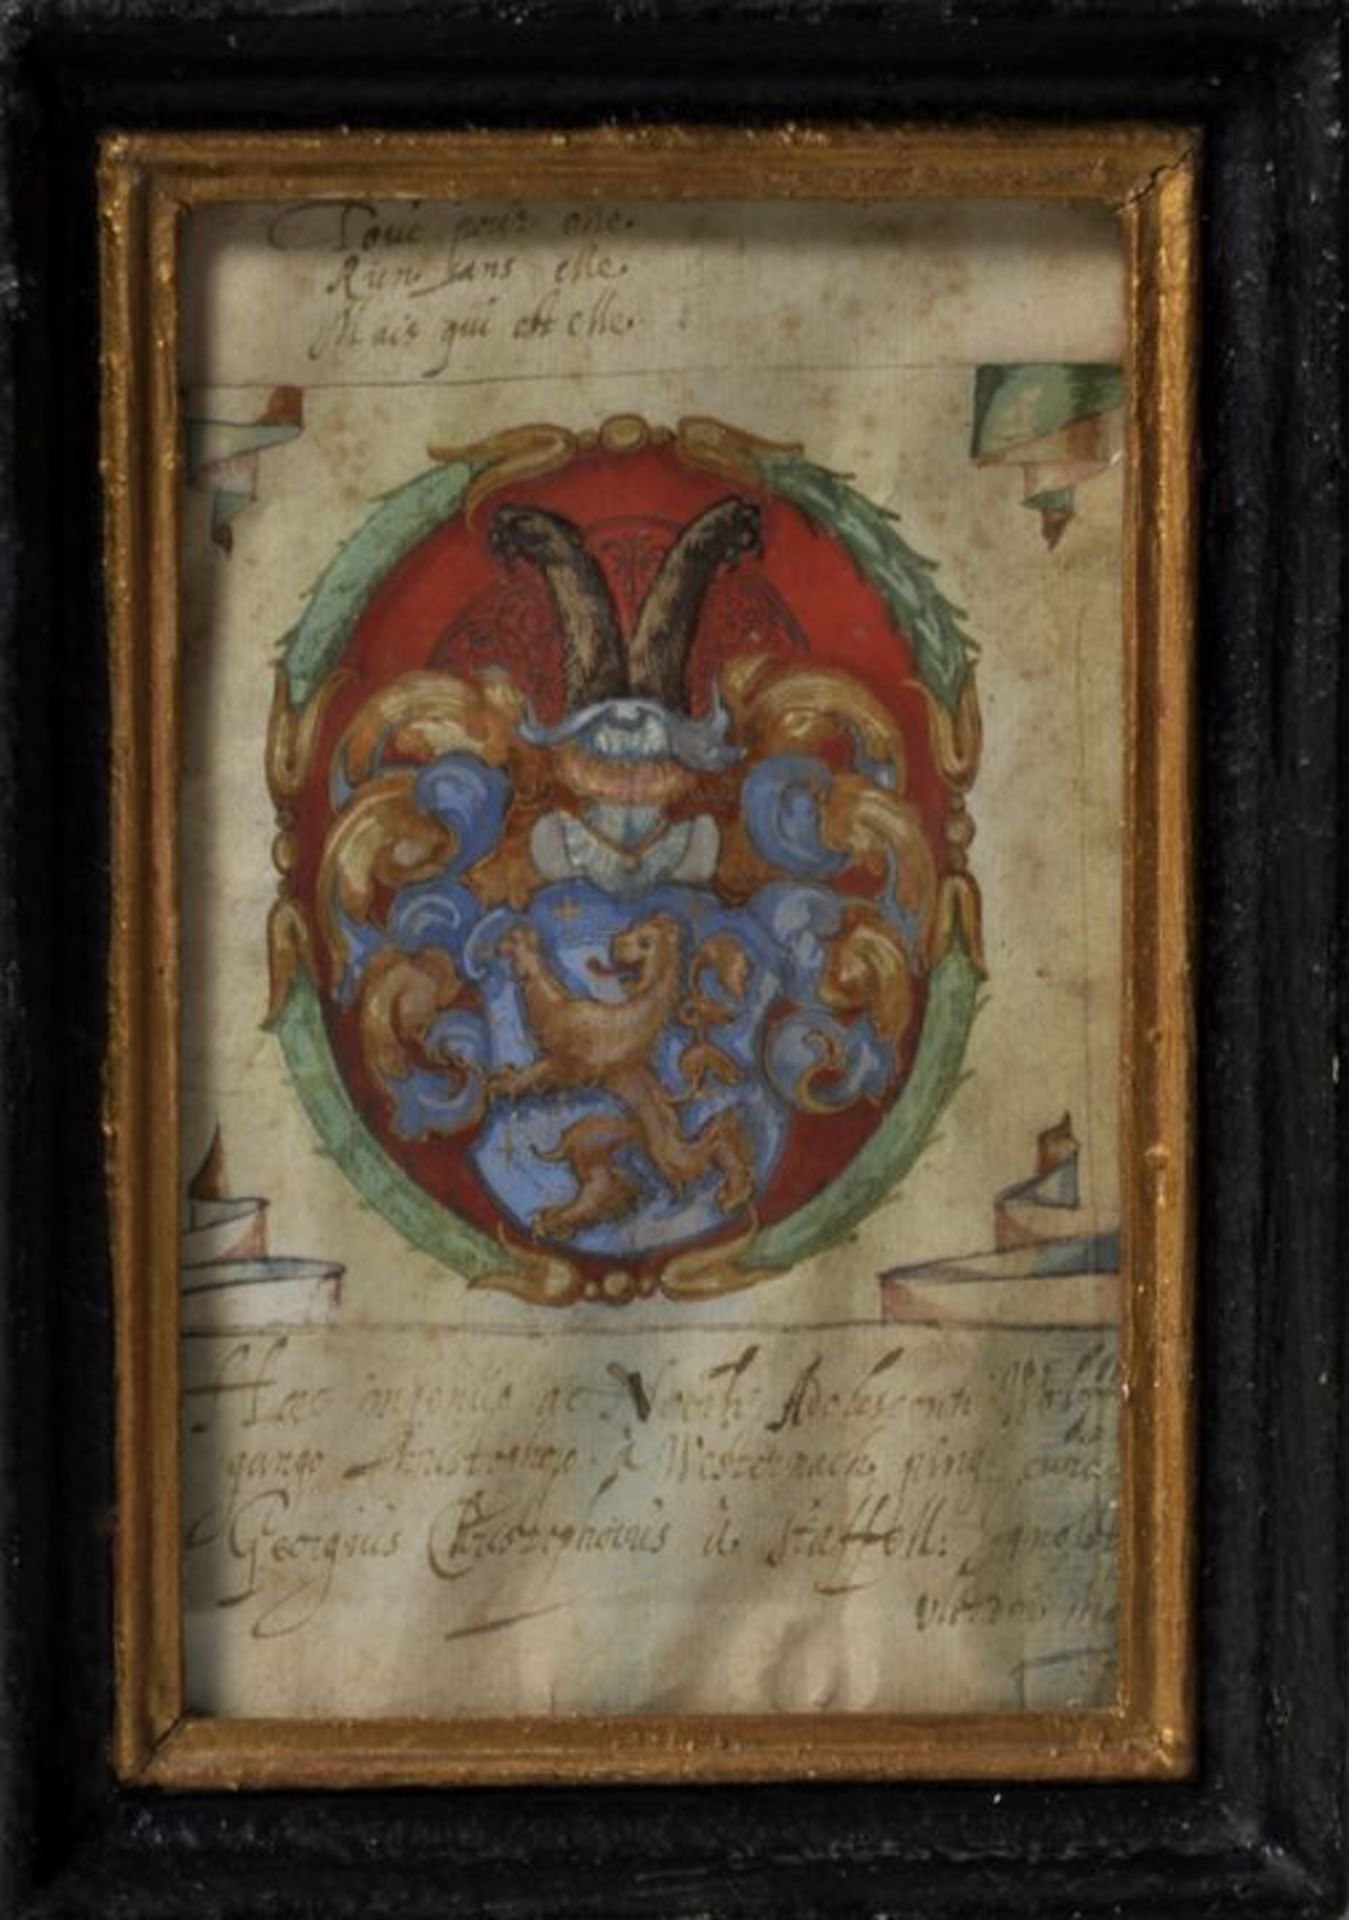 Buchmaler: sechs Blatt gemalter Wappendarstellungen deutscher Adelsgeschlechter, um 1600. - Bild 2 aus 4